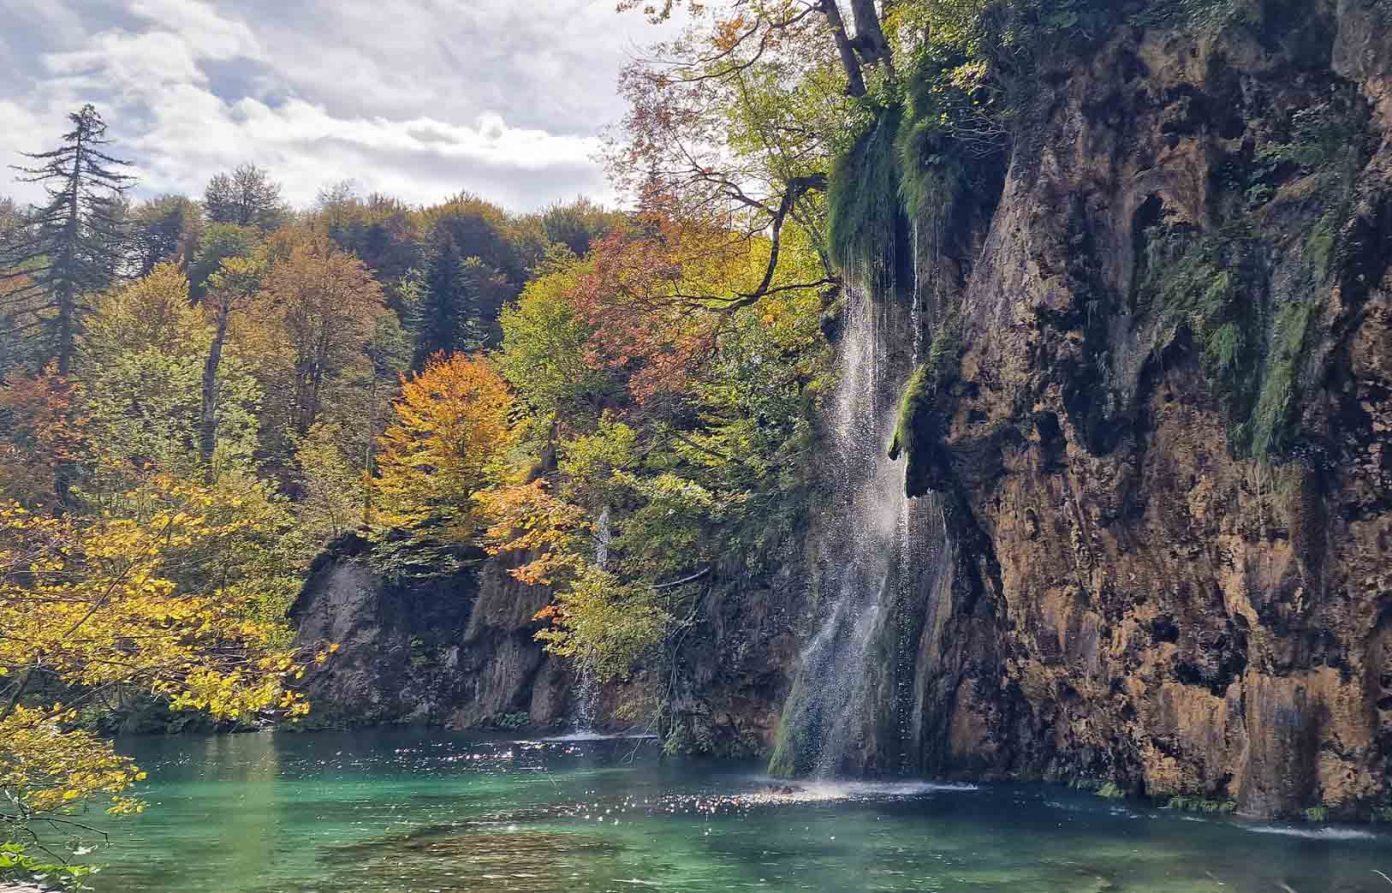 Choáng ngợp vẻ đẹp mùa Thu ở vườn quốc gia Plitvice, Croatia - 12